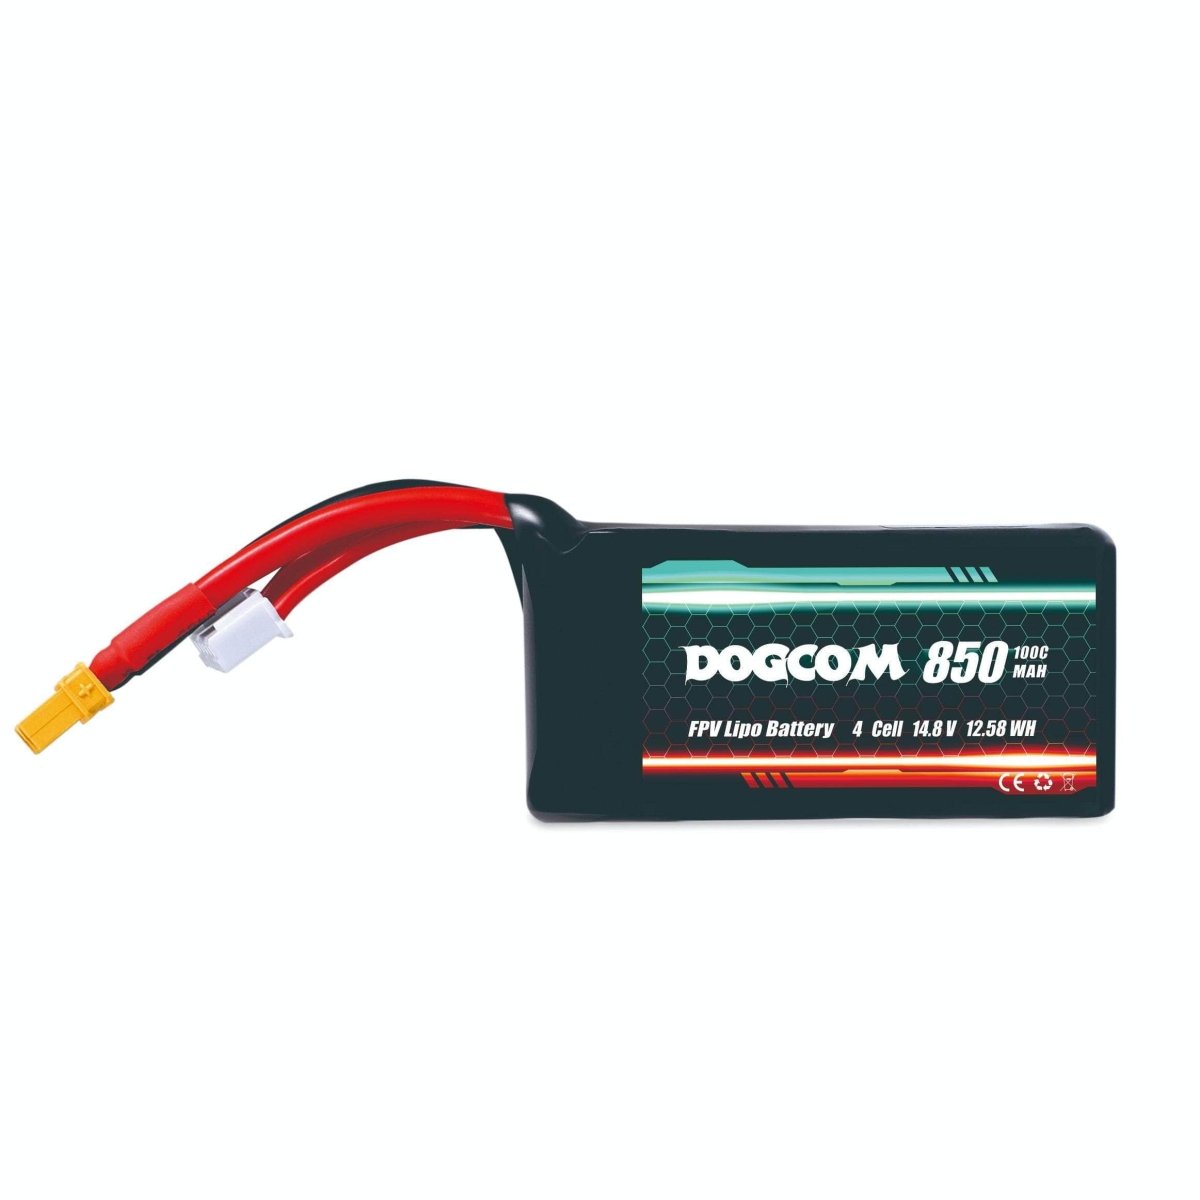 Dogcom Batteries from WREKD Co.